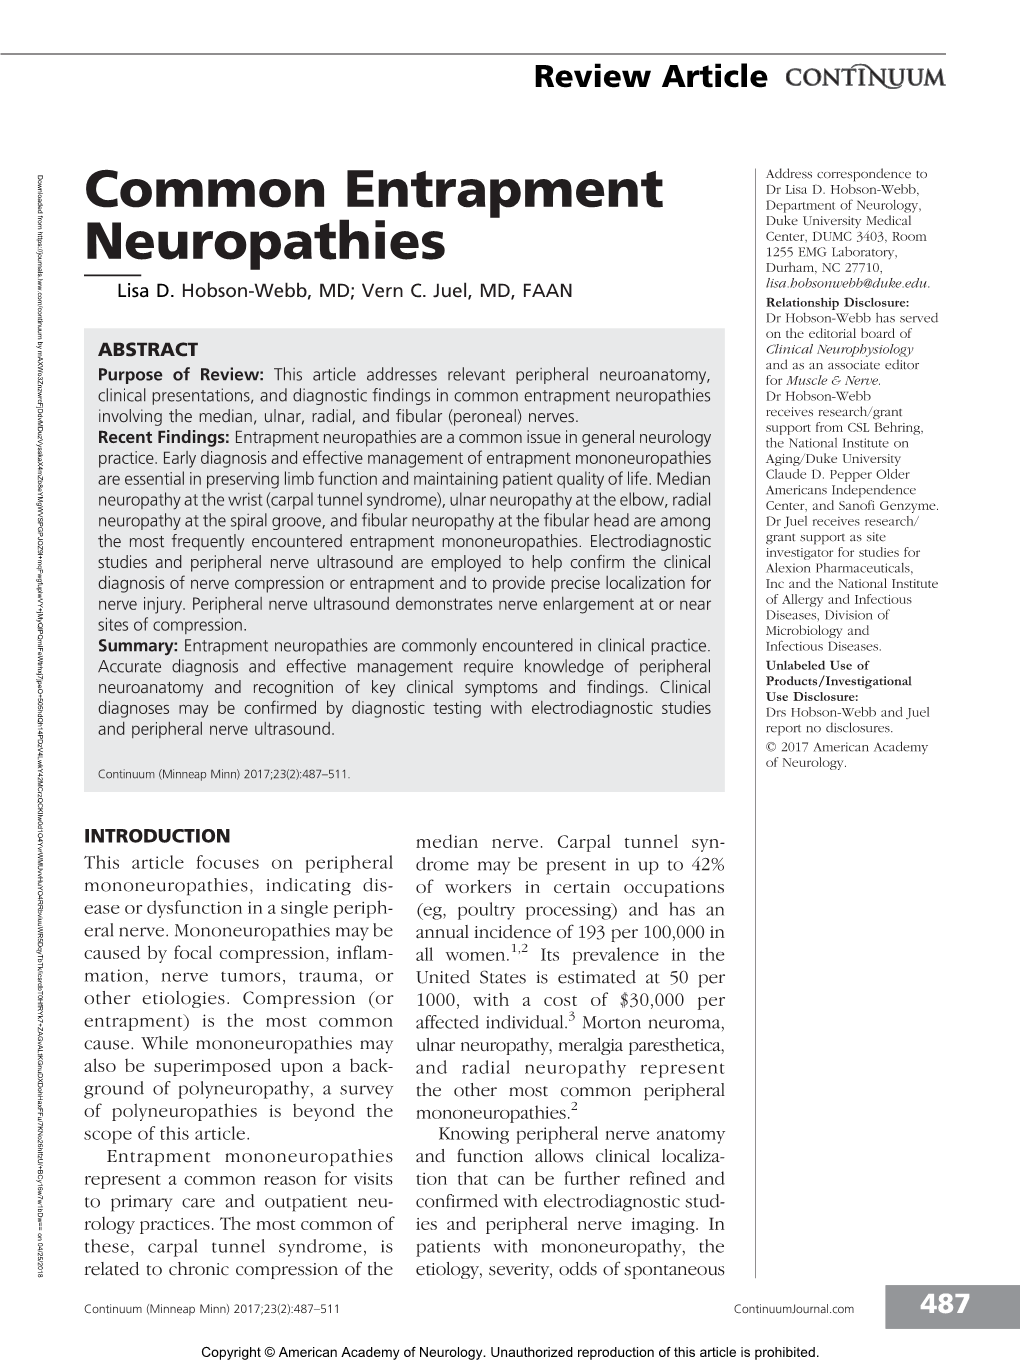 Common Entrapment Neuropathies